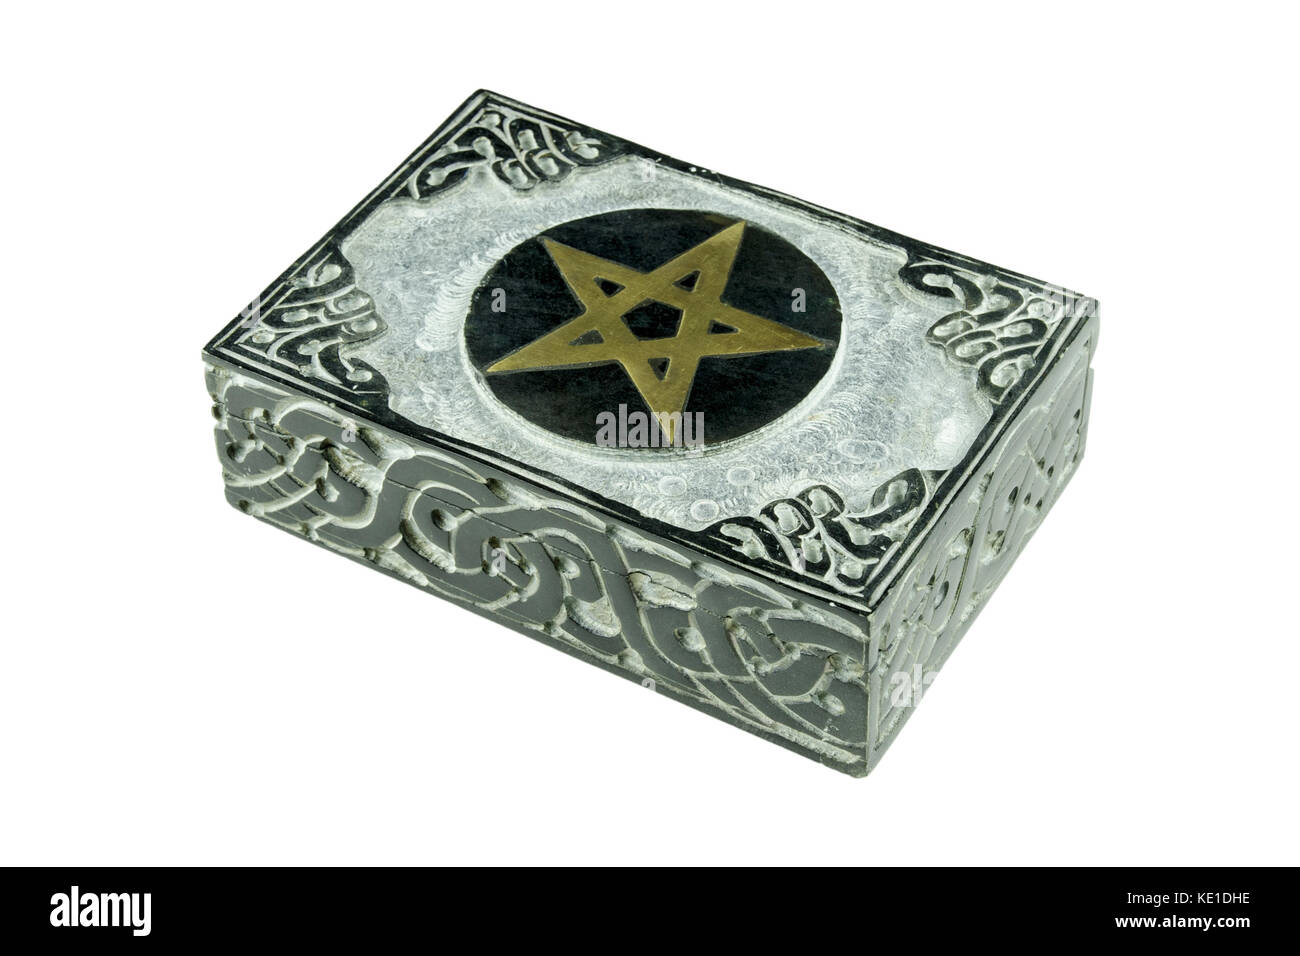 Stillleben mit geschlossenen Stein esoterische mystische Box mit geschnitzten Zeichen Pentagramm und Ornamente auf weißem Hintergrund Stockfoto